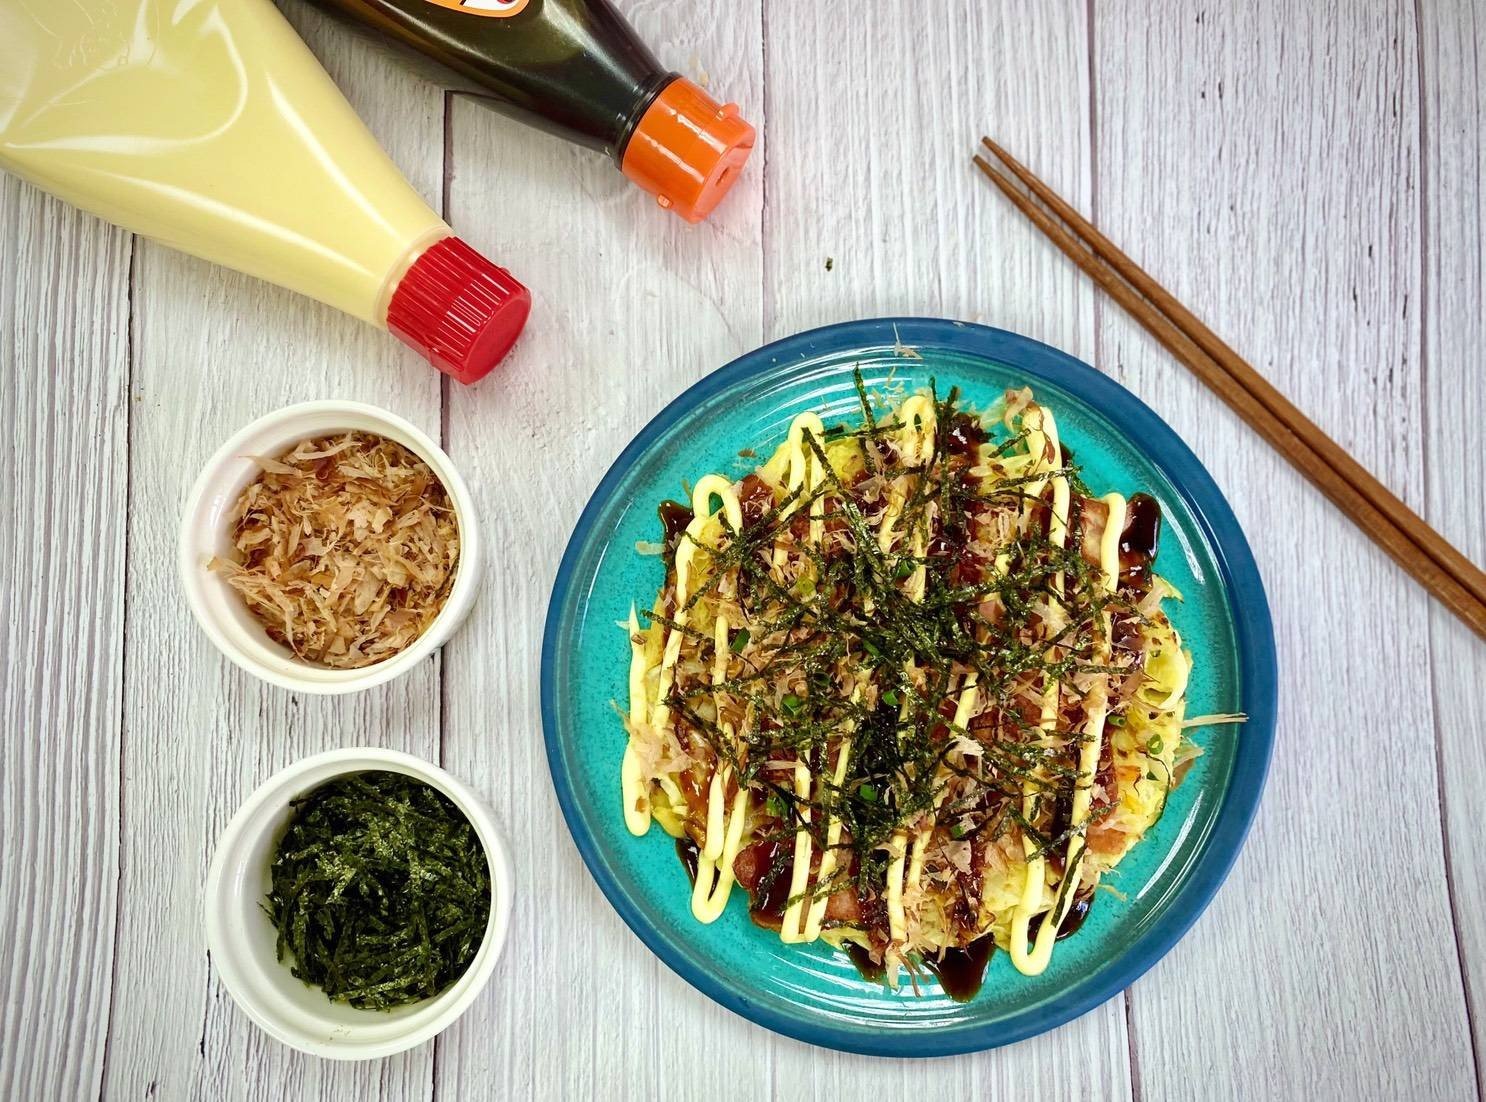 พิซซ่าญี่ปุ่น (Okonomiyaki)